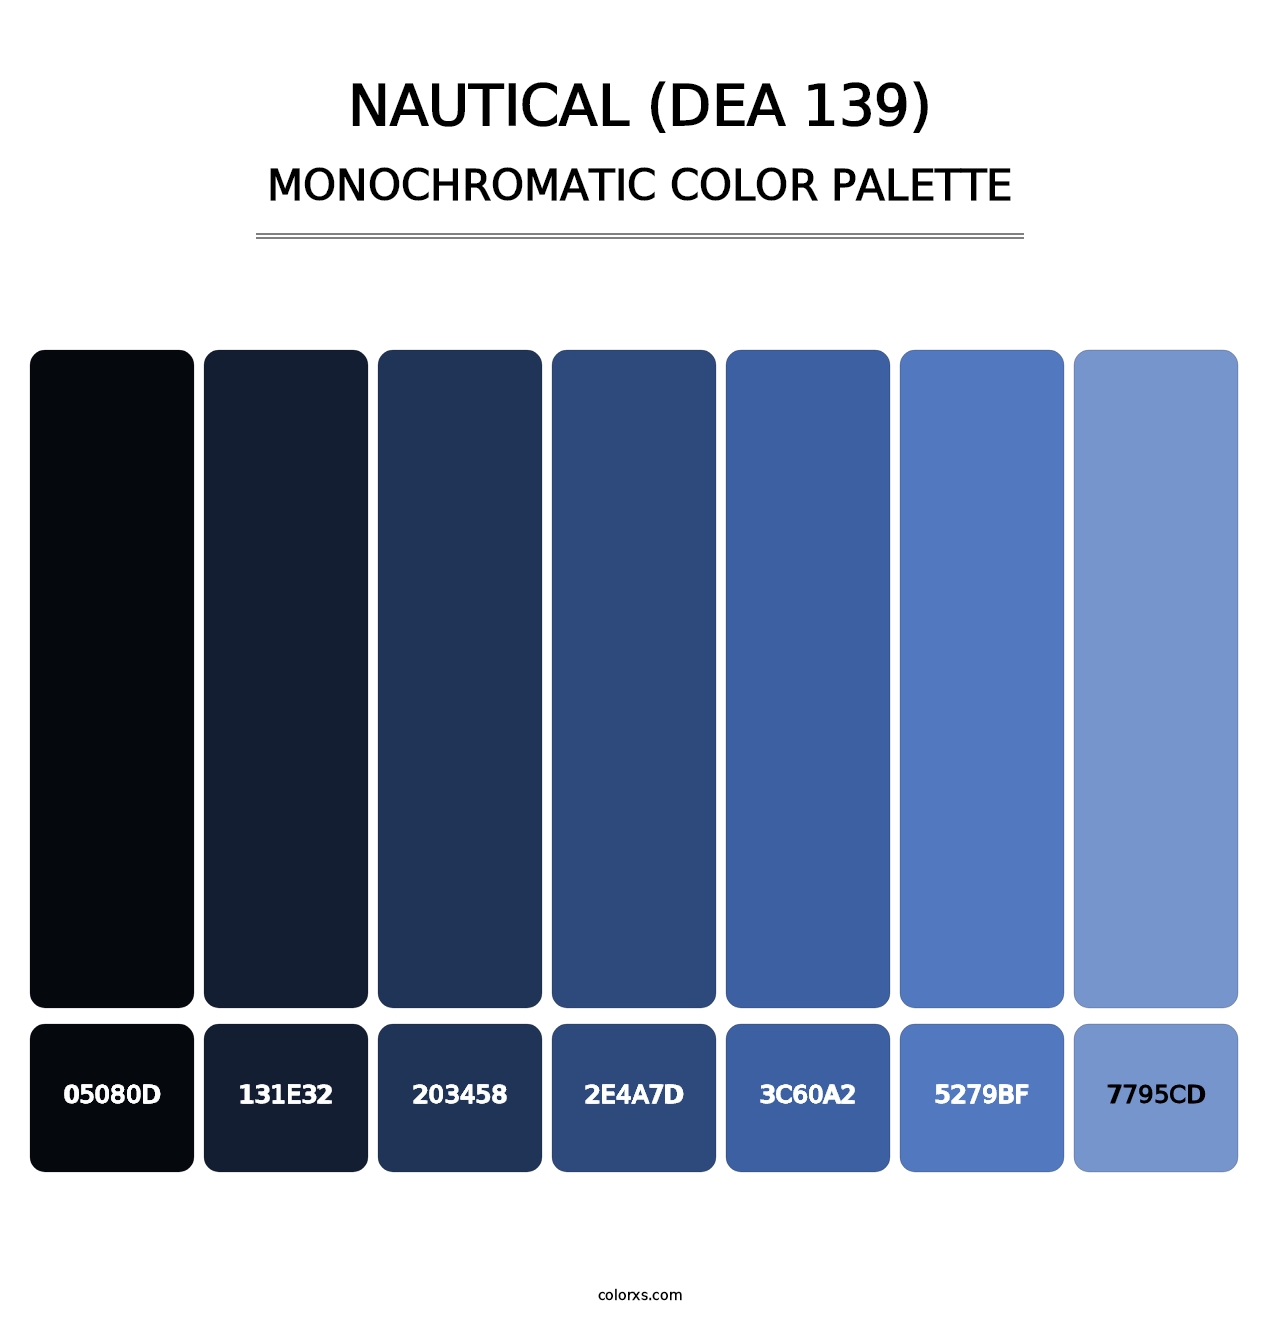 Nautical (DEA 139) - Monochromatic Color Palette